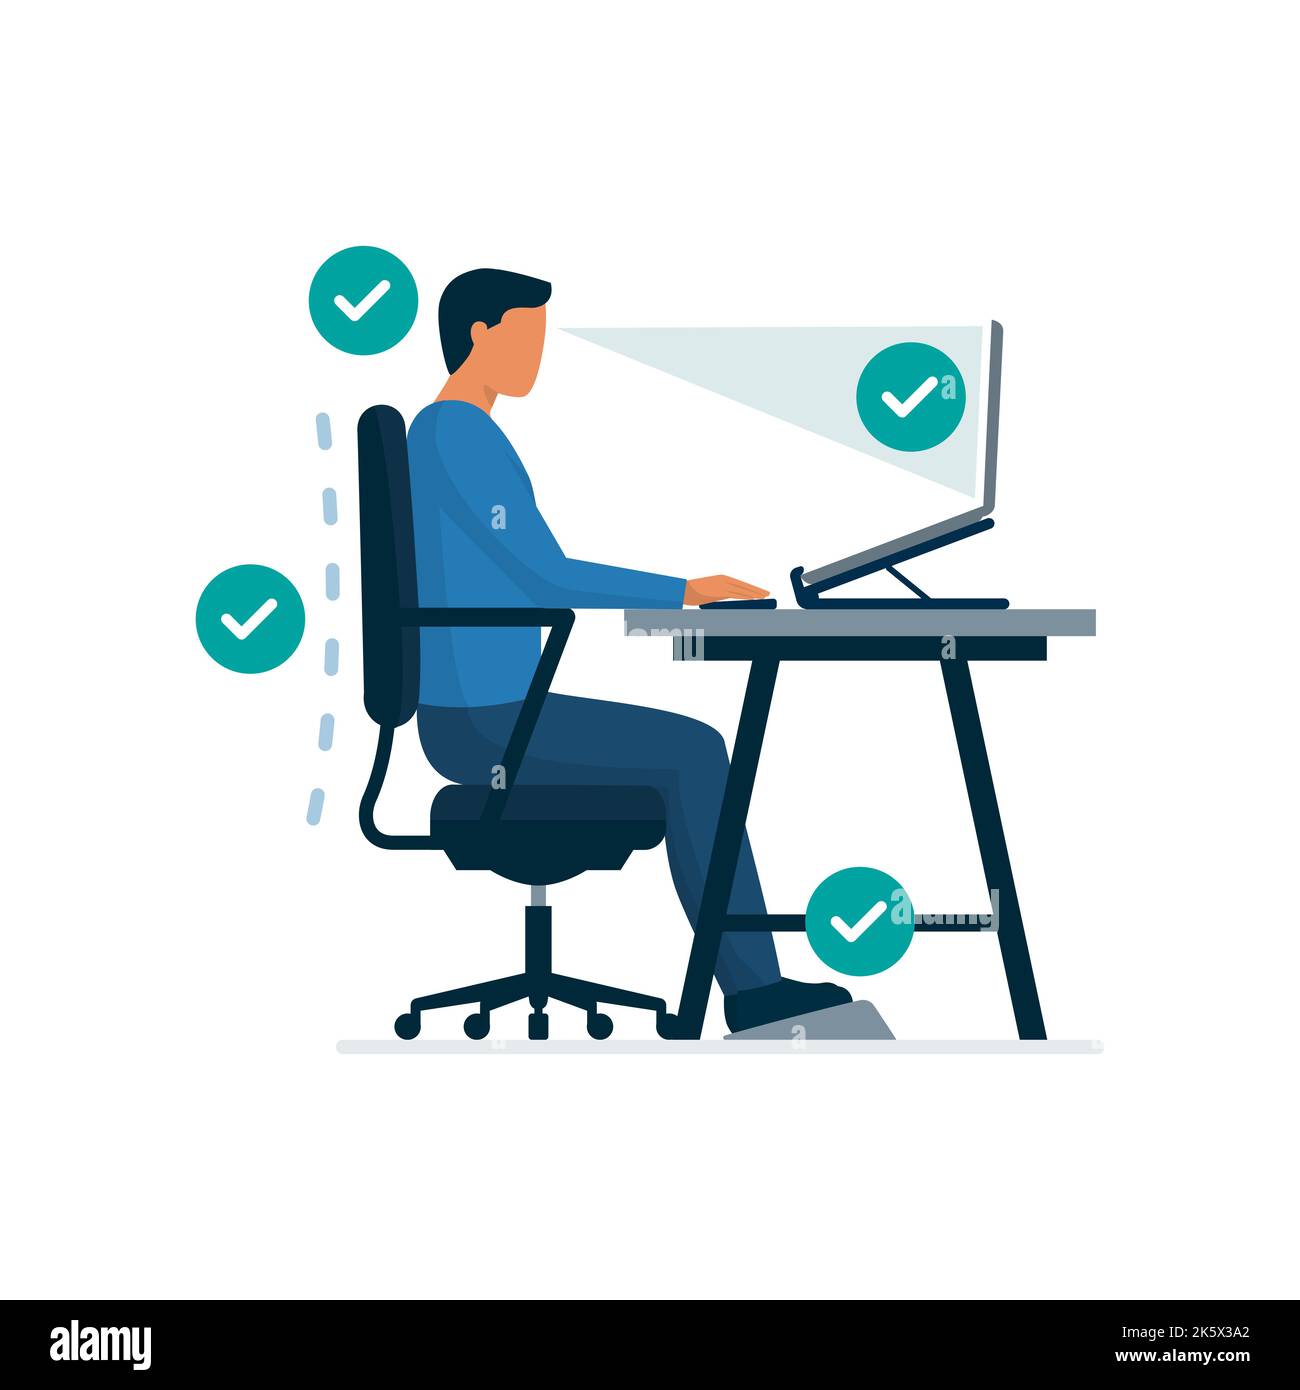 Espace de travail ergonomique et position assise correcte au bureau, homme assis correctement au bureau et travaillant avec un ordinateur portable Illustration de Vecteur